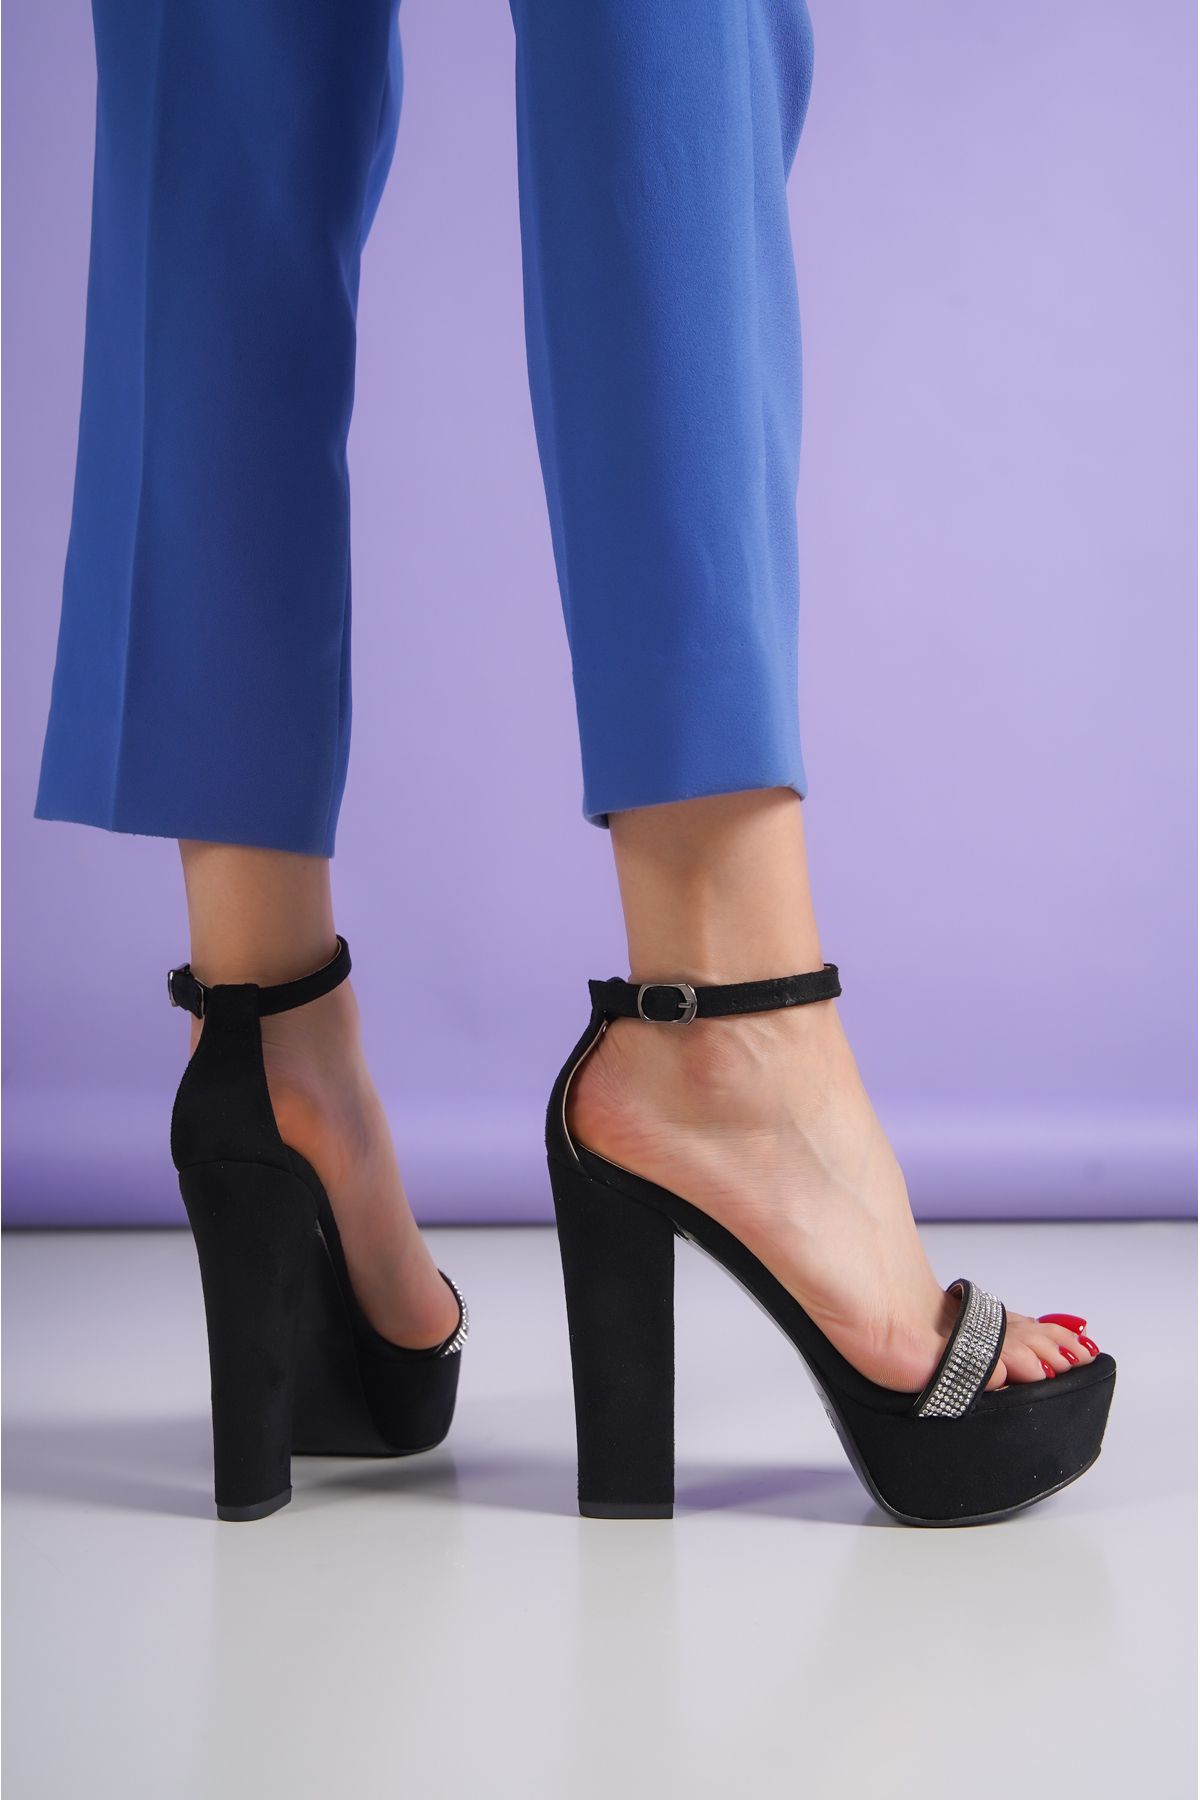 ayakkabıhavuzu Siyah Tek Bant Taşlı Kadın  Platform Topuklu Ayakkabı  16cm